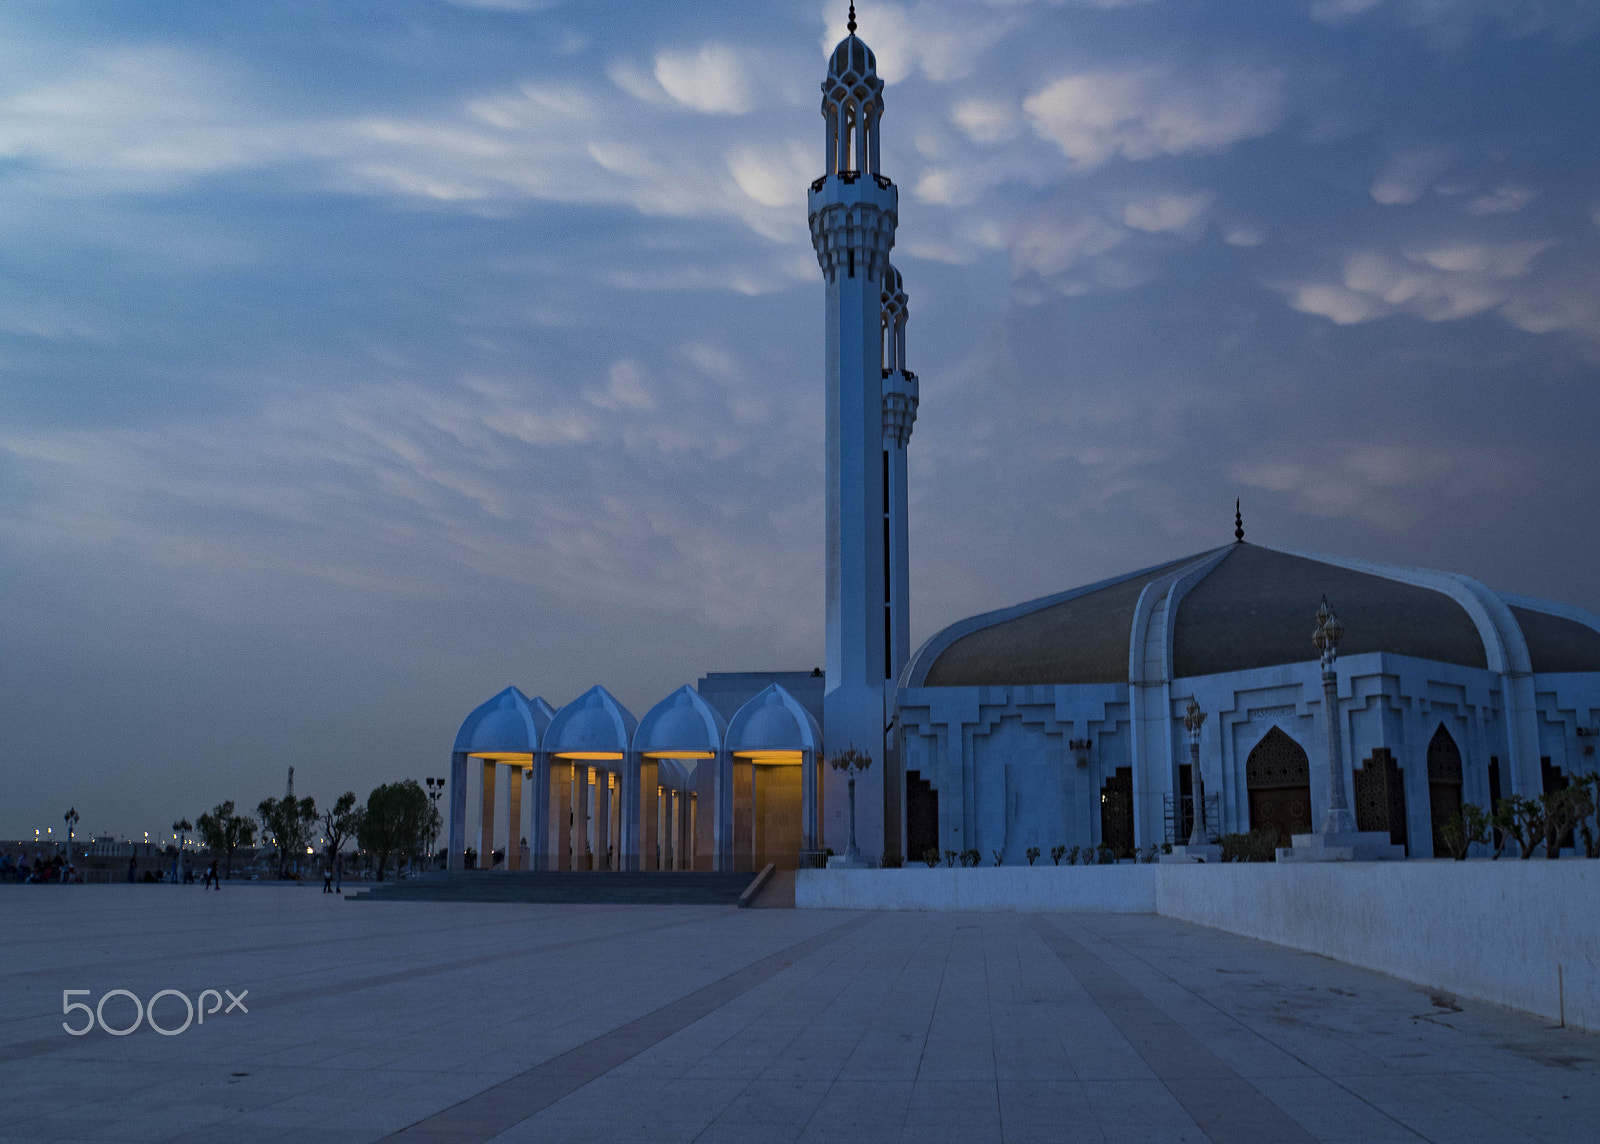 Sony a7R + Sony E 18-200mm F3.5-6.3 OSS LE sample photo. Mosque at jeddah photography